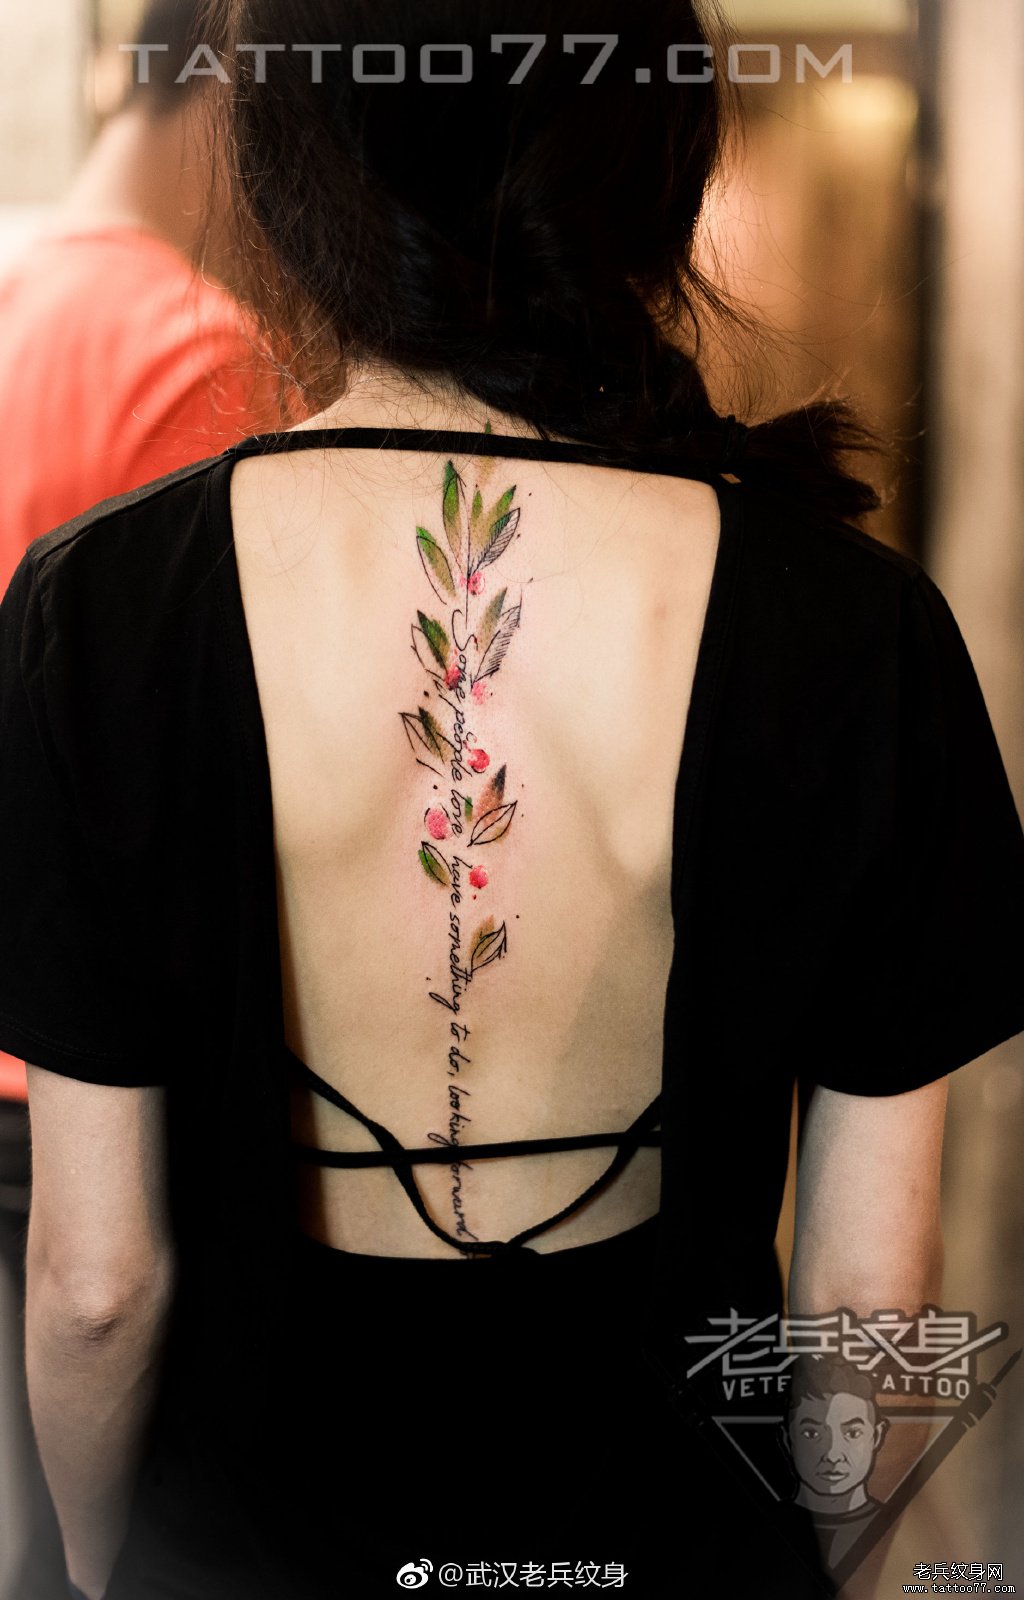 脊椎花卉字母纹身图案作品